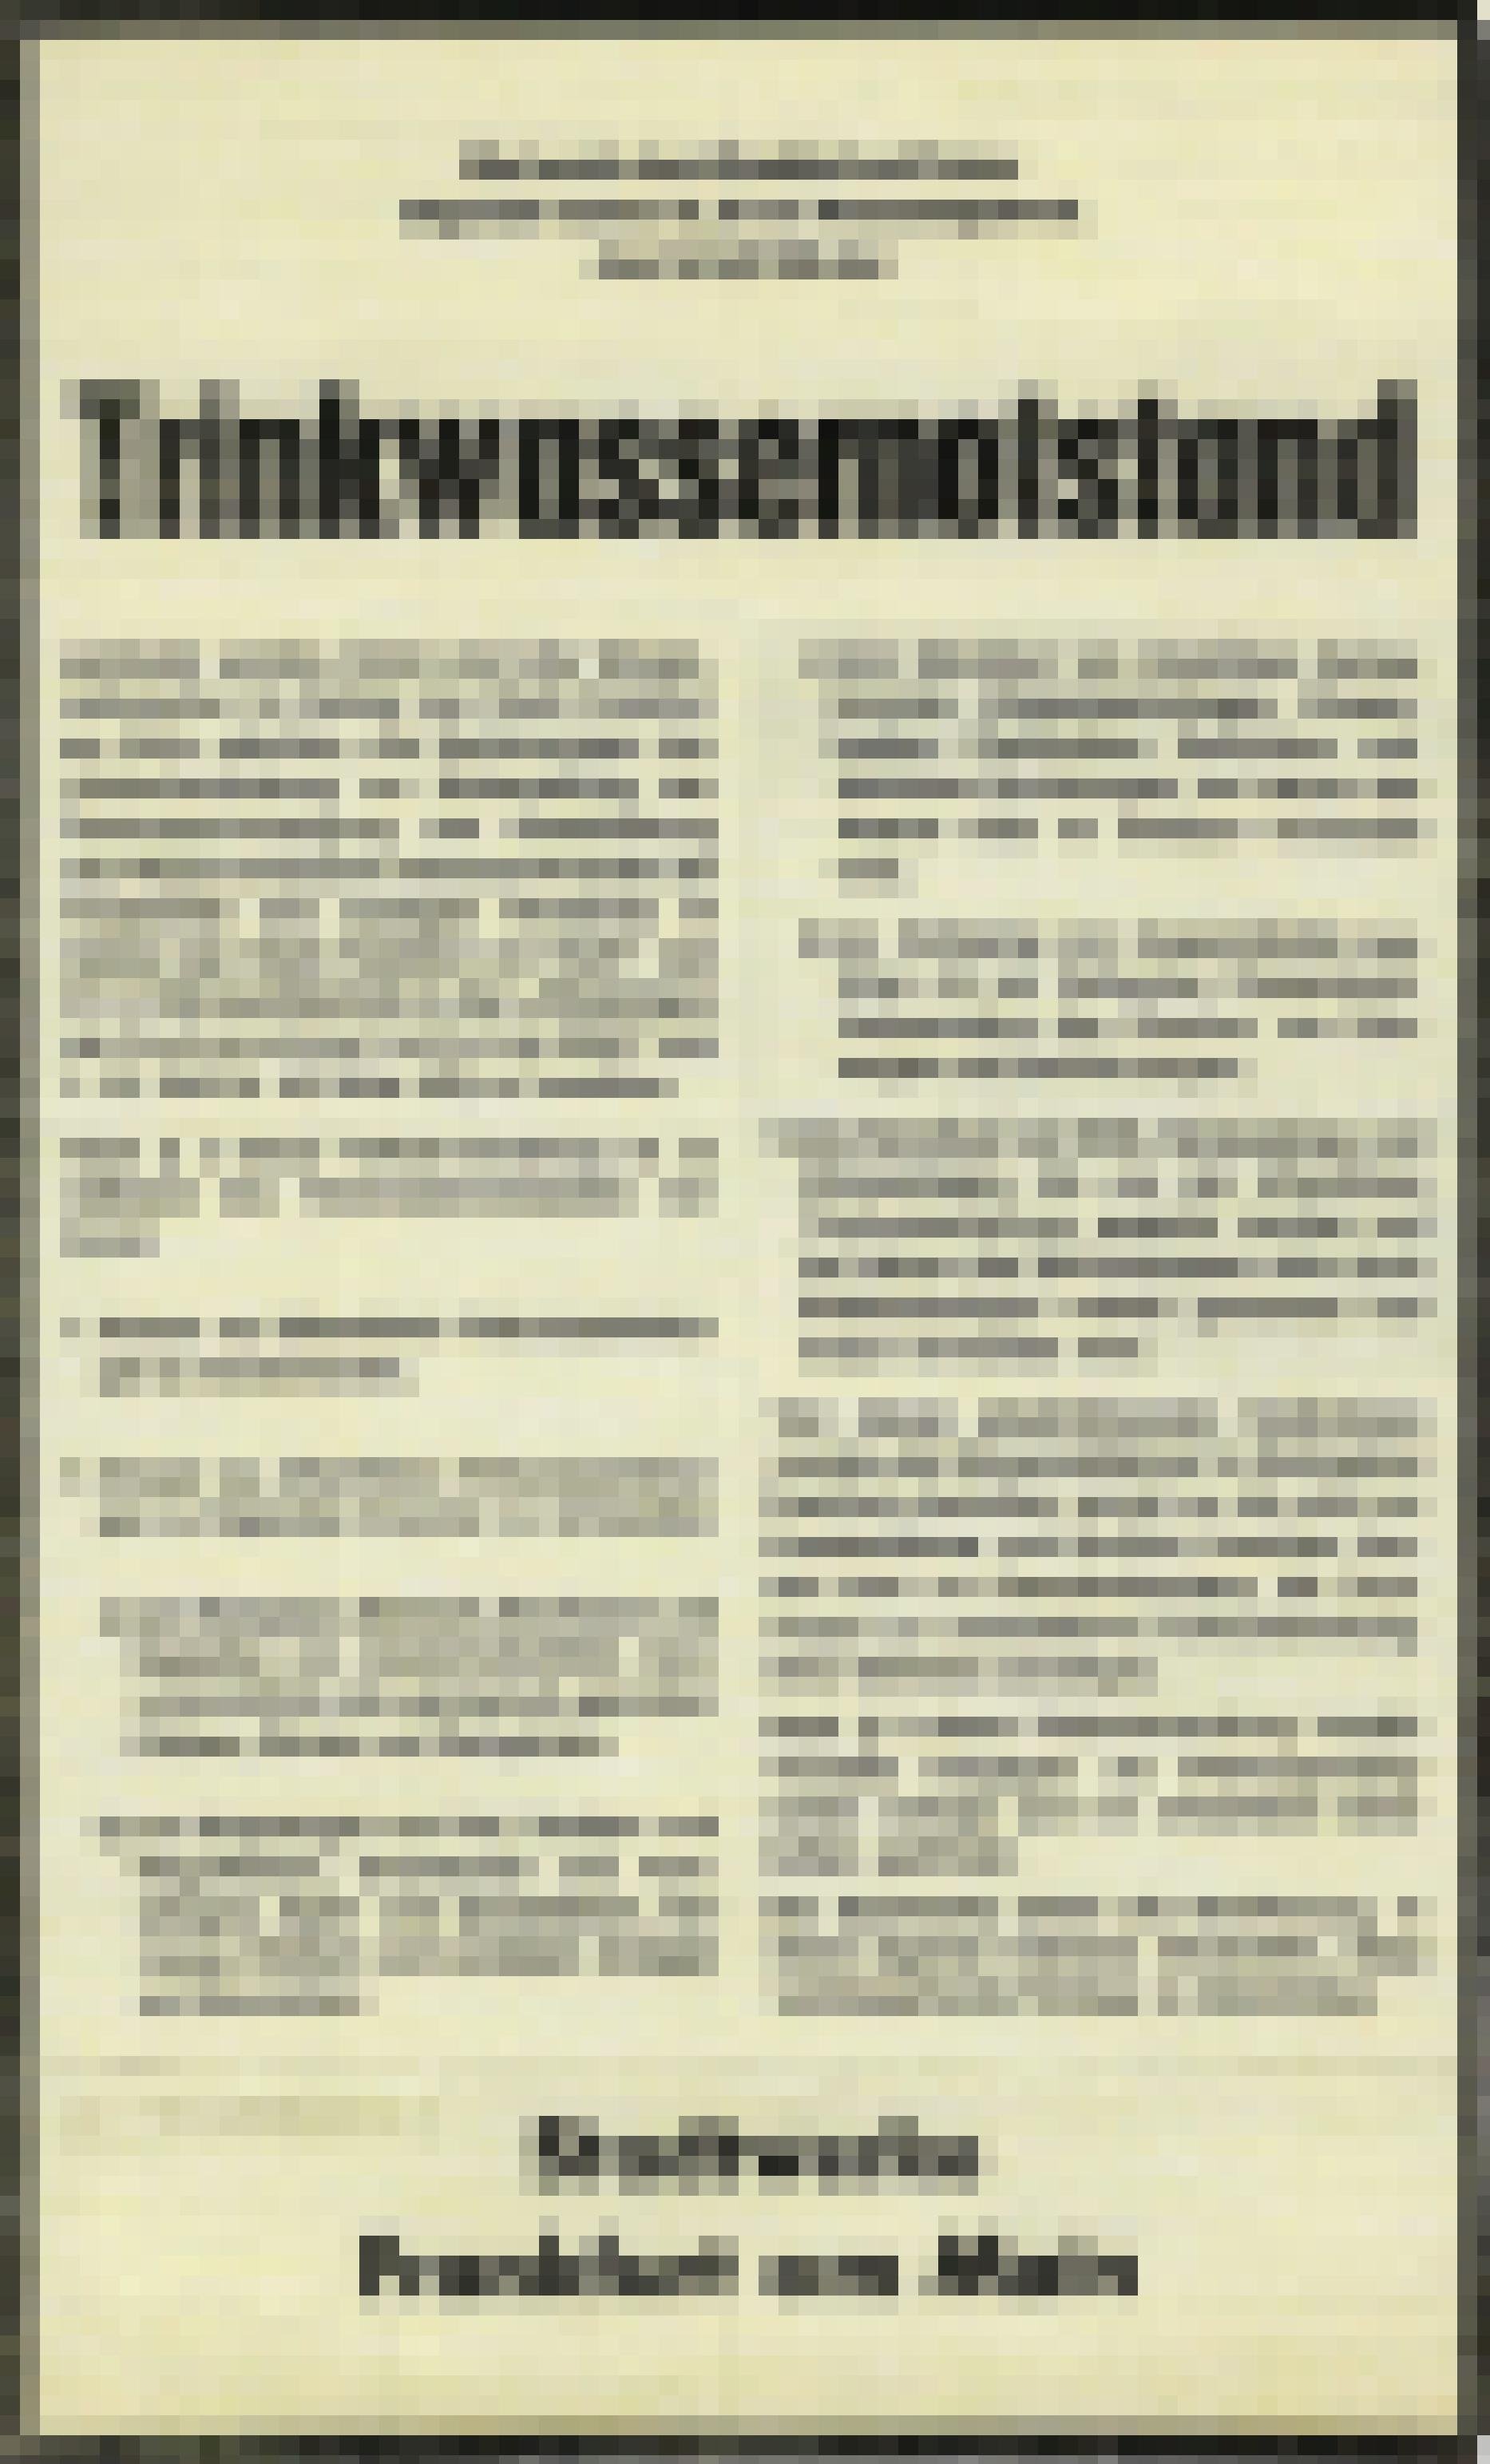 Plakat  mit schwarzer Schrift auf vergilbtem Papier, Bekanntmachung des Trinkwassernotstandes in Frankfurt am Main im Jahr 1964